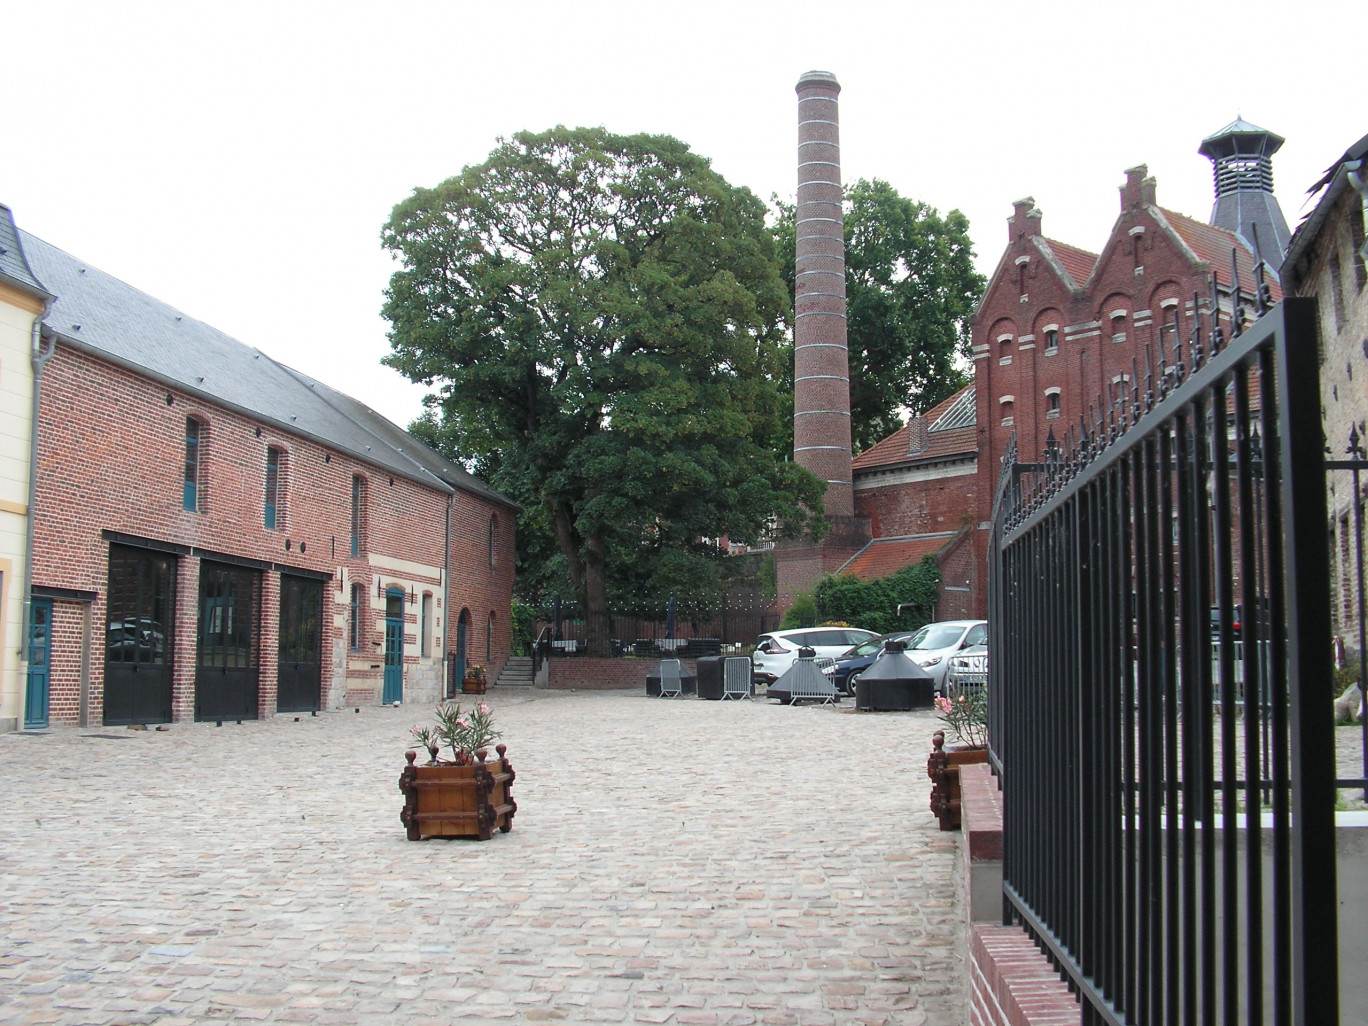 L’architecture industrielle caractéristique de la brasserie, vue du côté de la cour pavée intérieure.